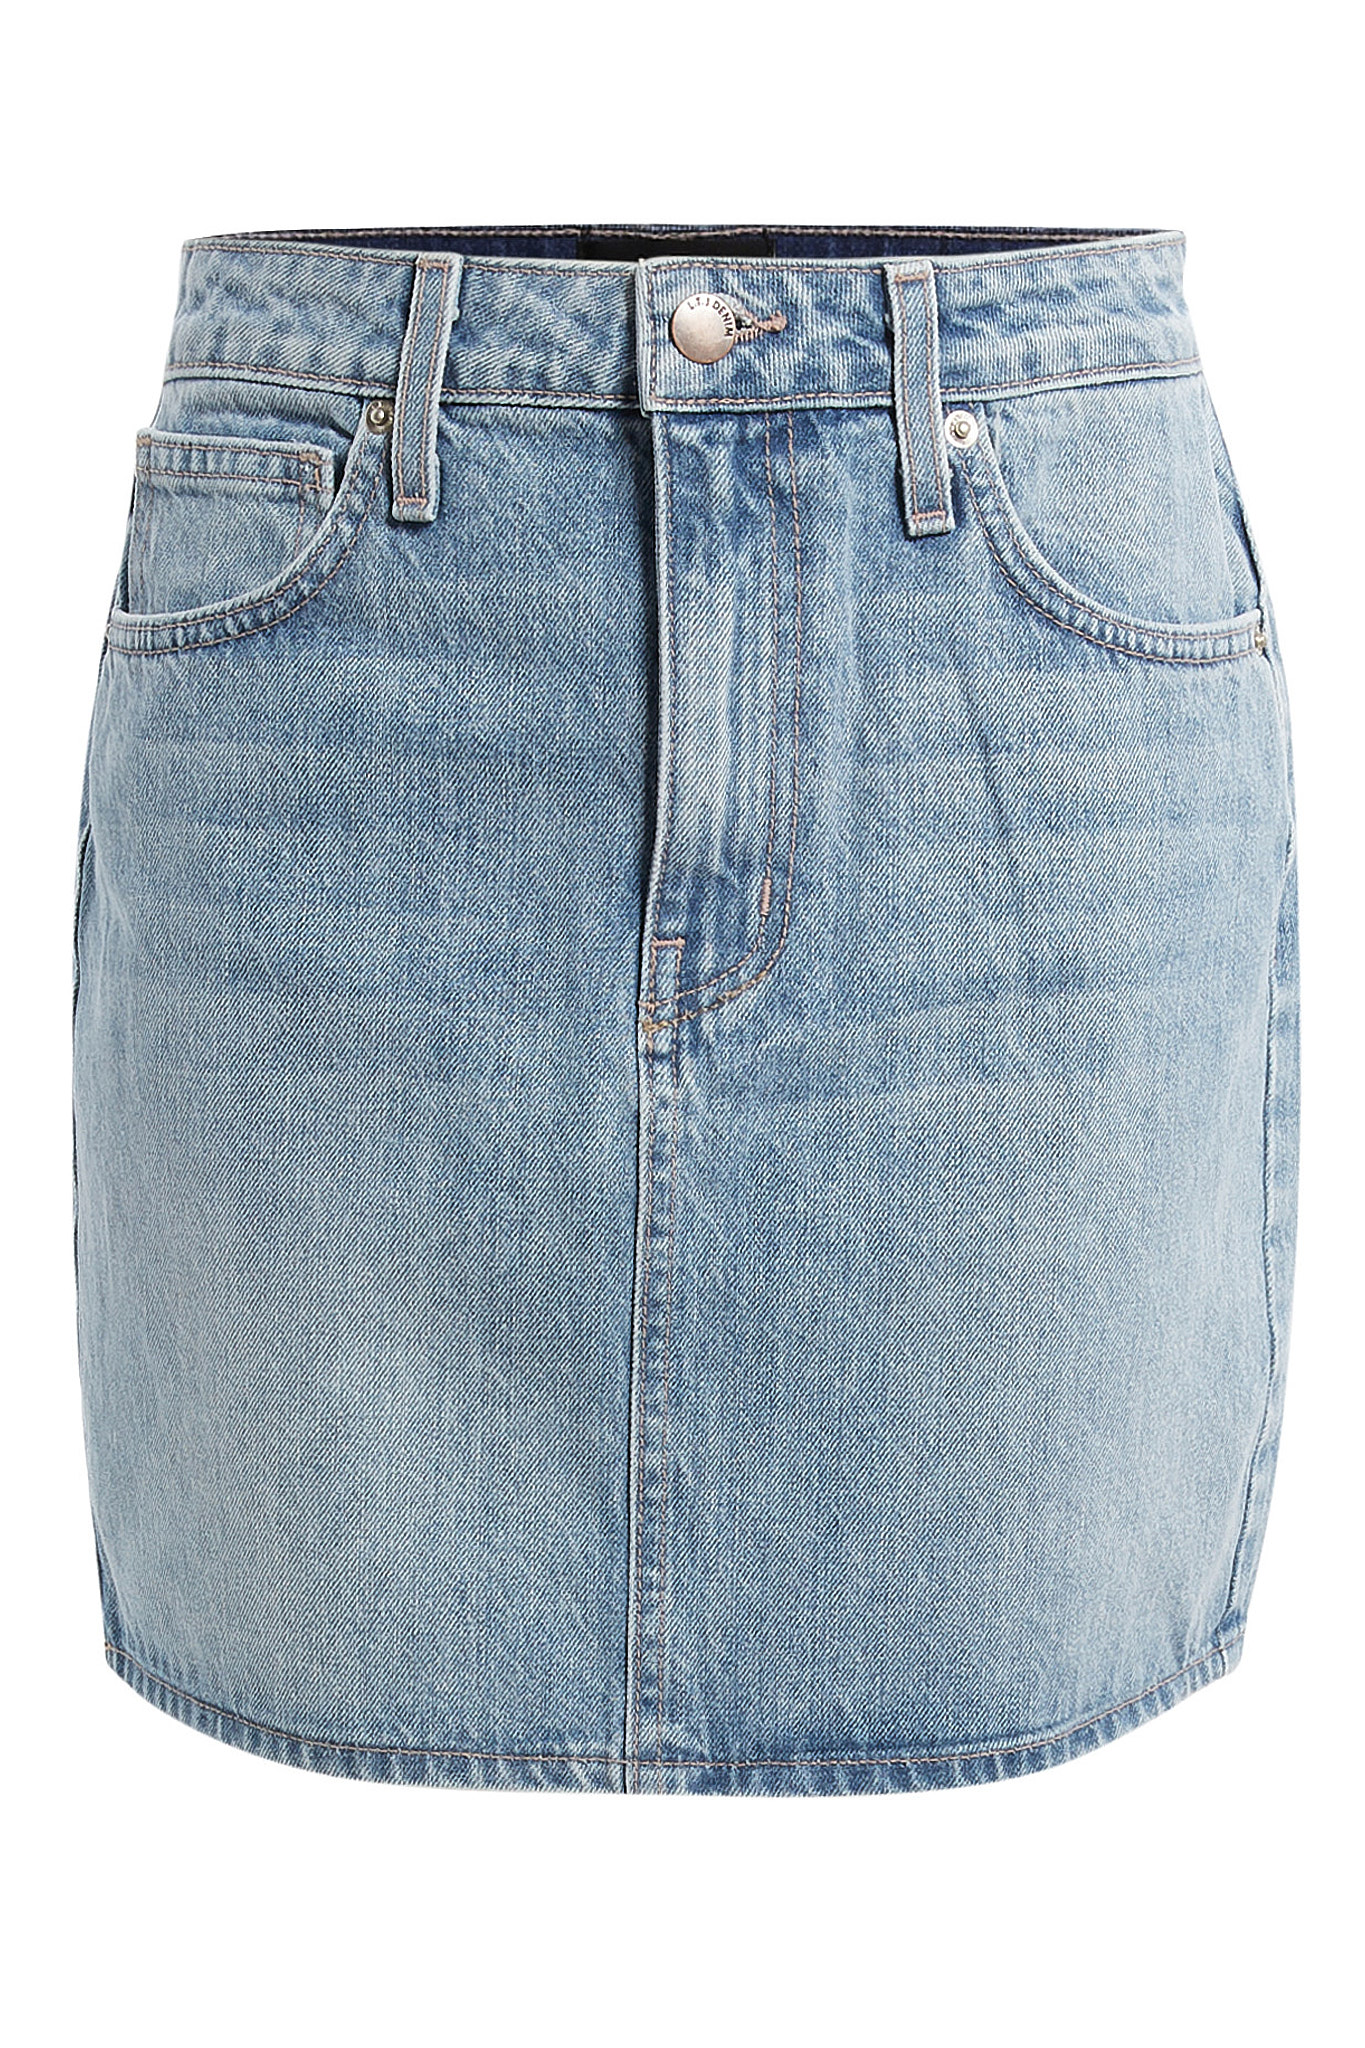 L.T.J Denim Mini Skirt